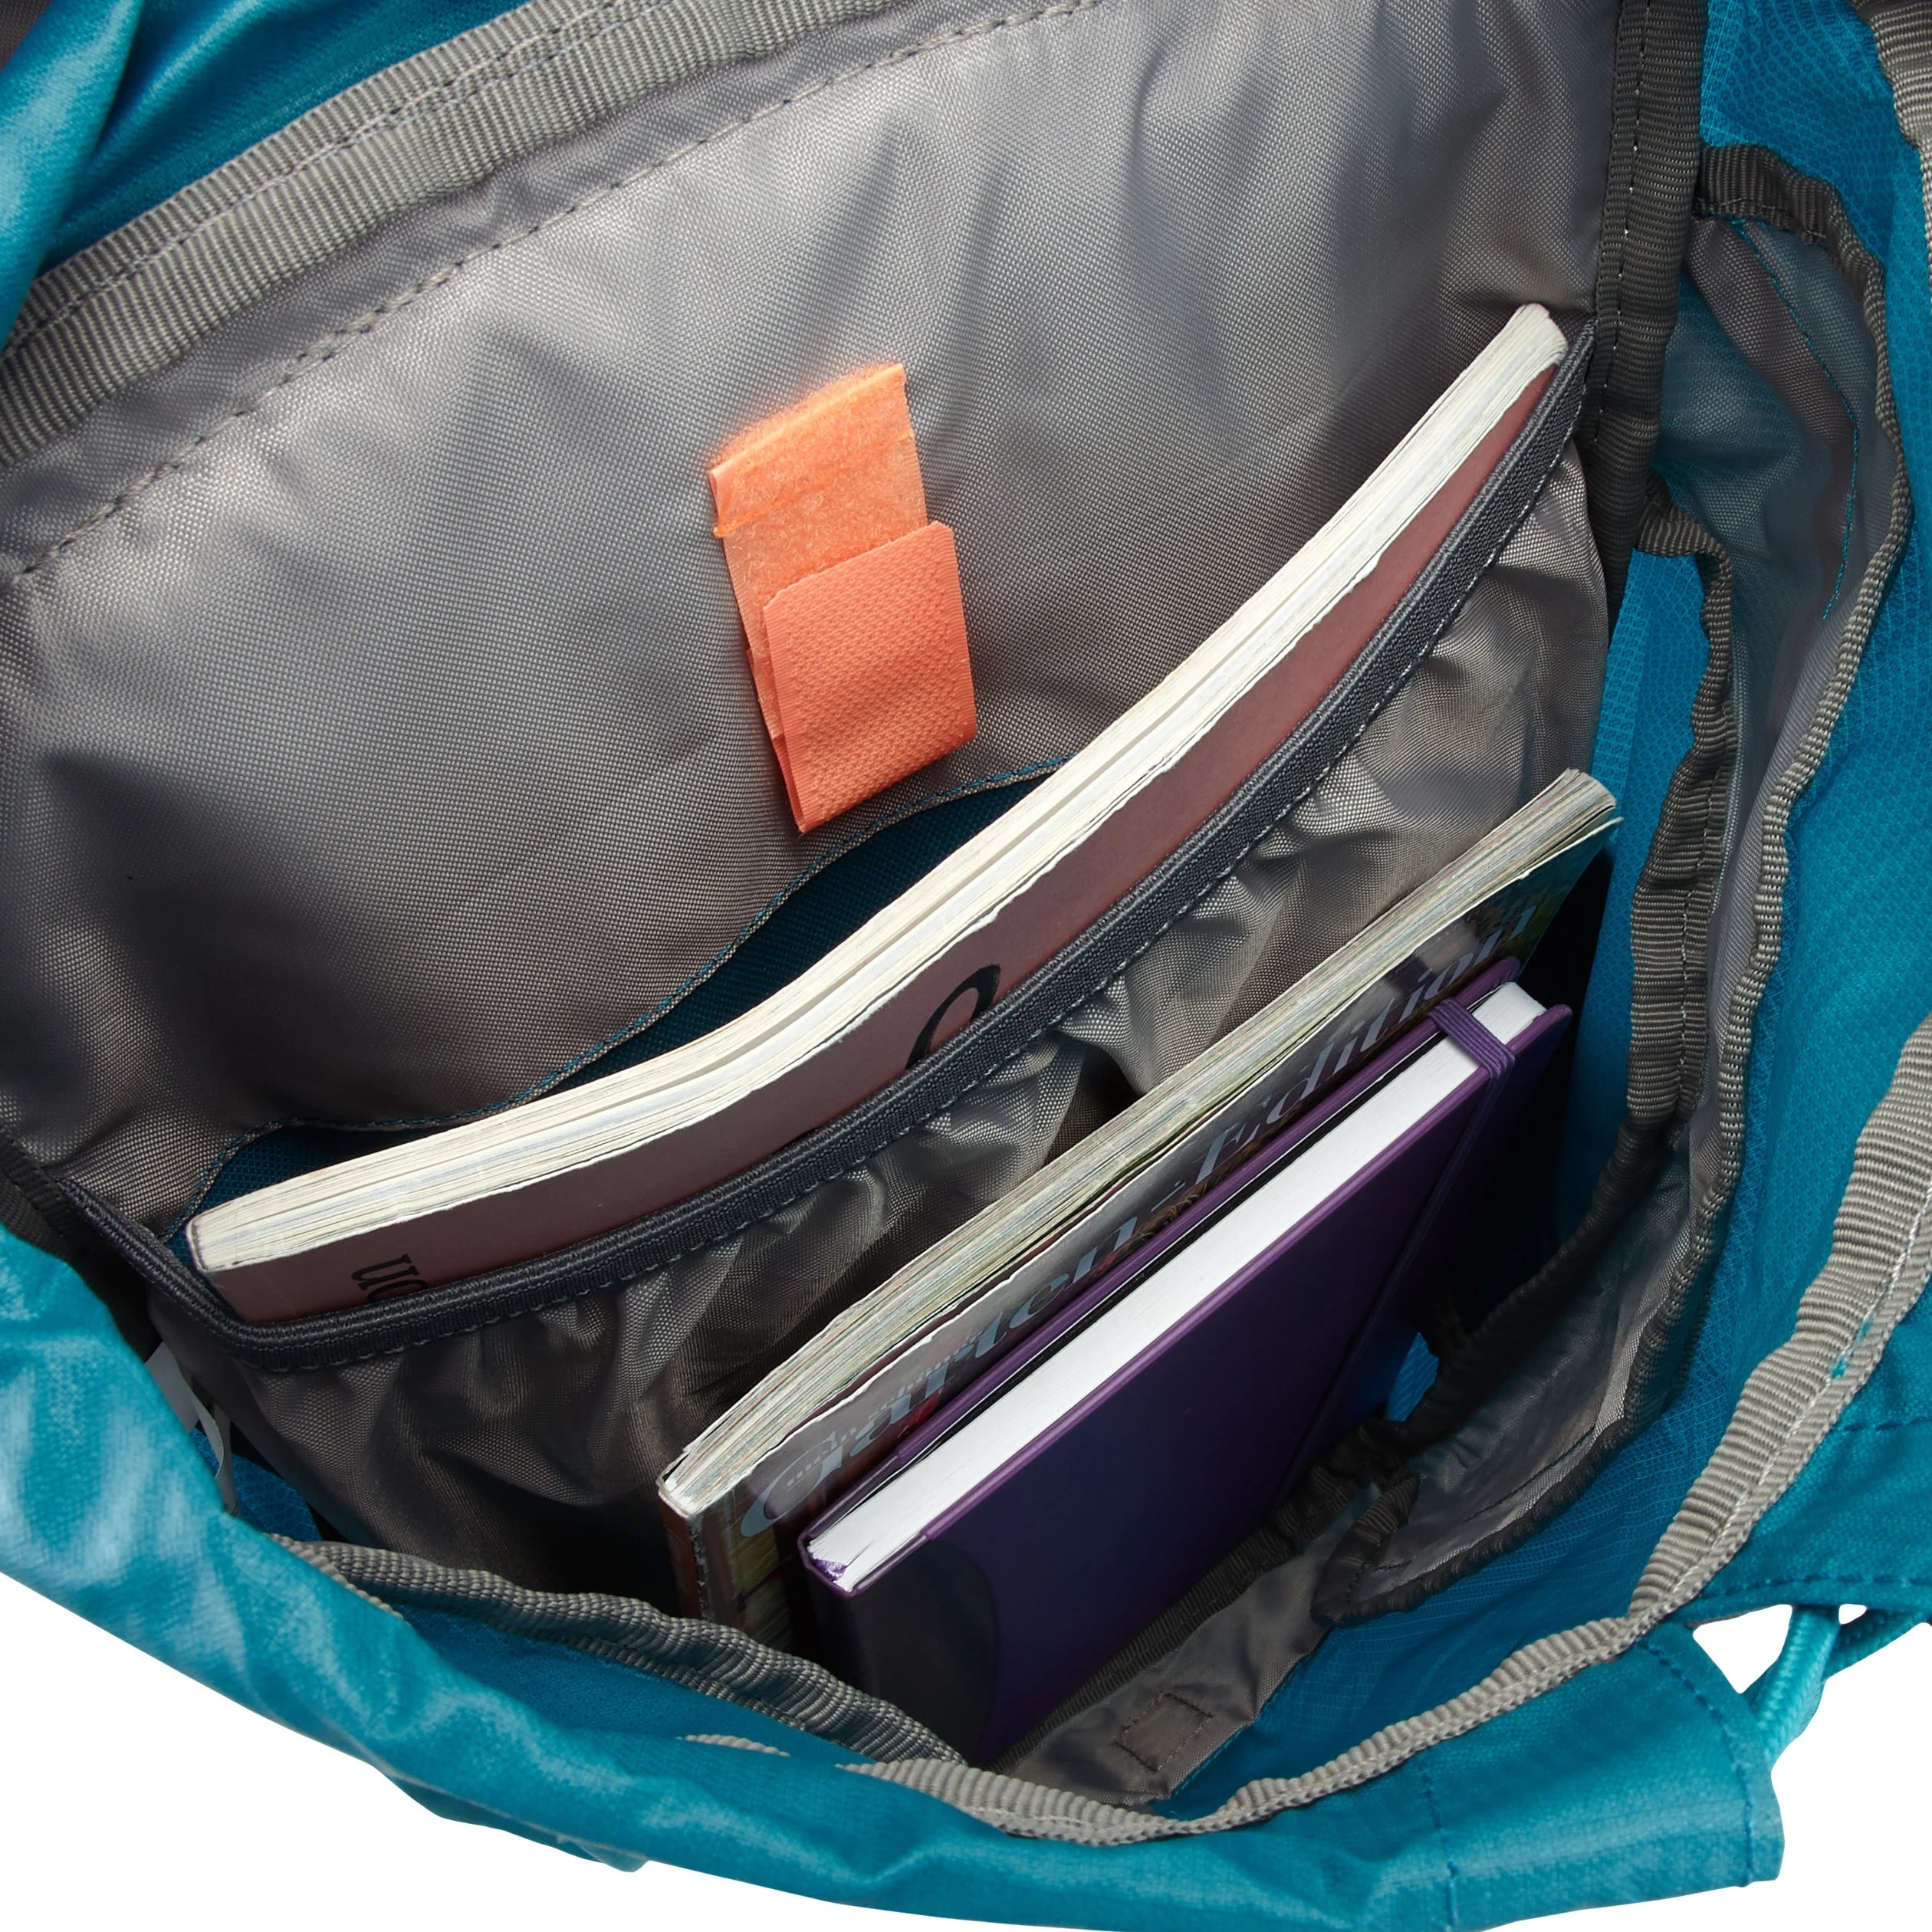 Deuter Daypack AC Lite 14 SL hiking backpack 50 cm - cinnamon-teal